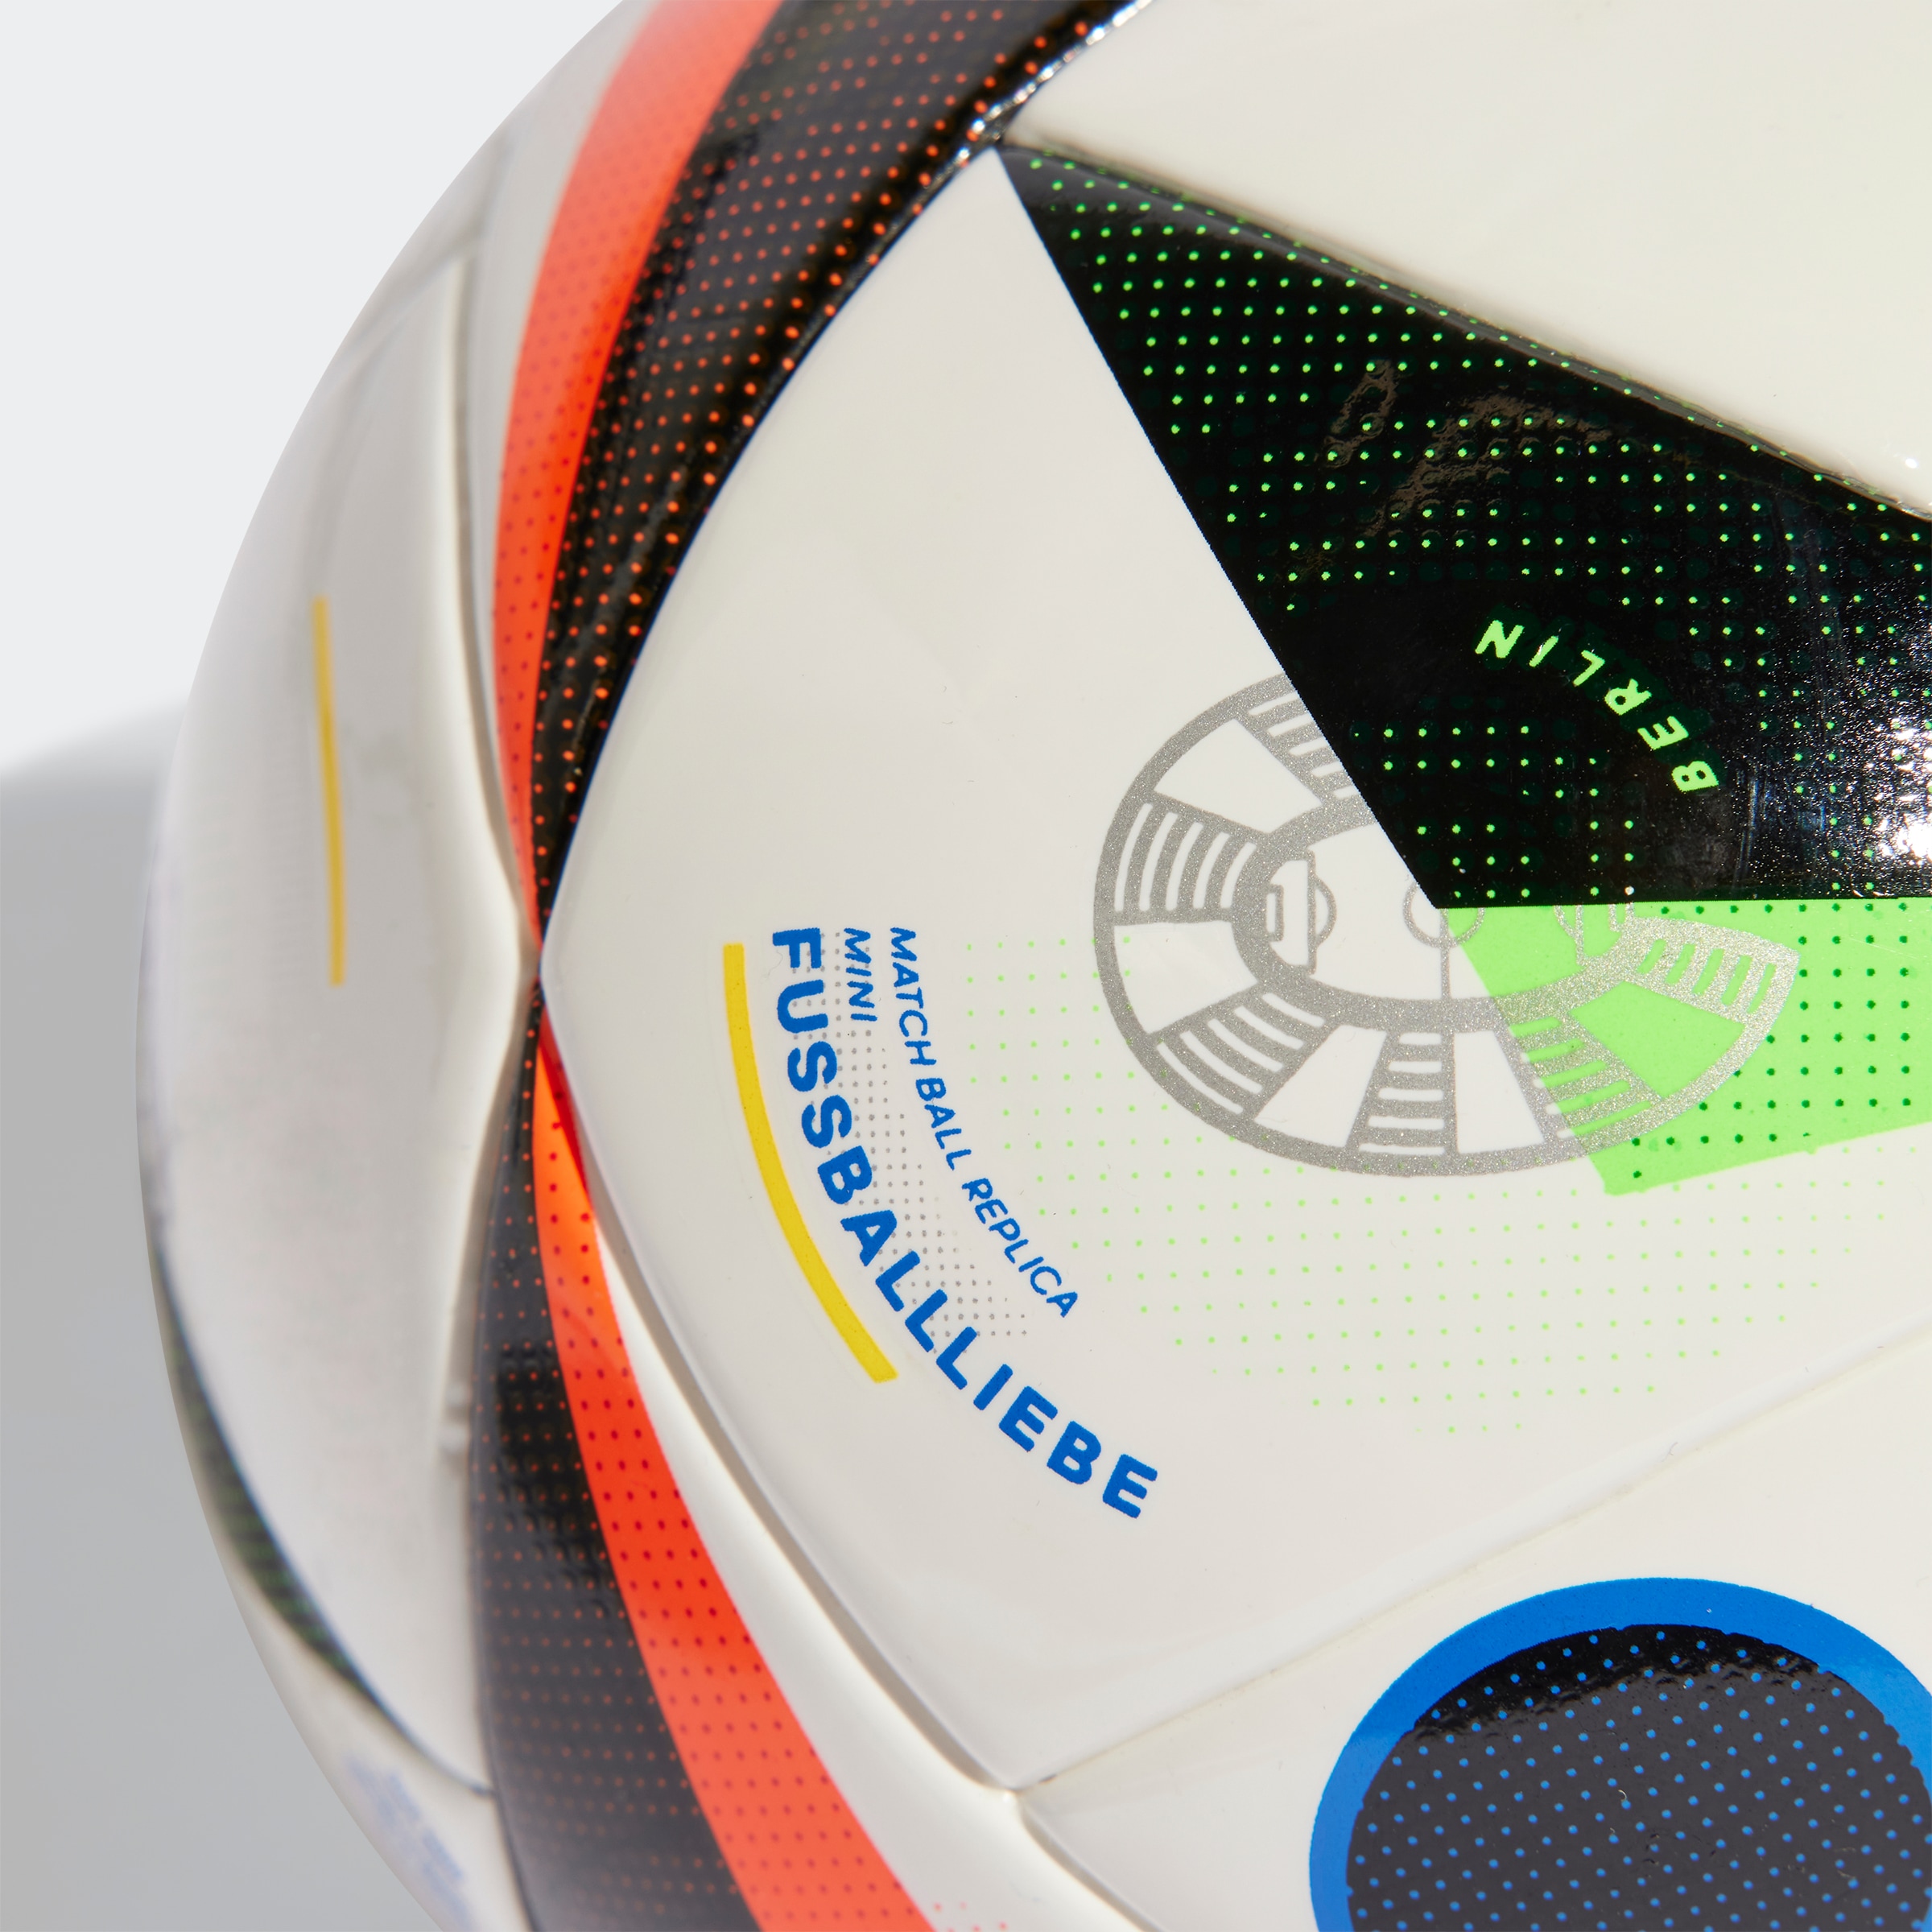 adidas Performance Fussball »EURO24 MINI«, (1), Europameisterschaft 2024